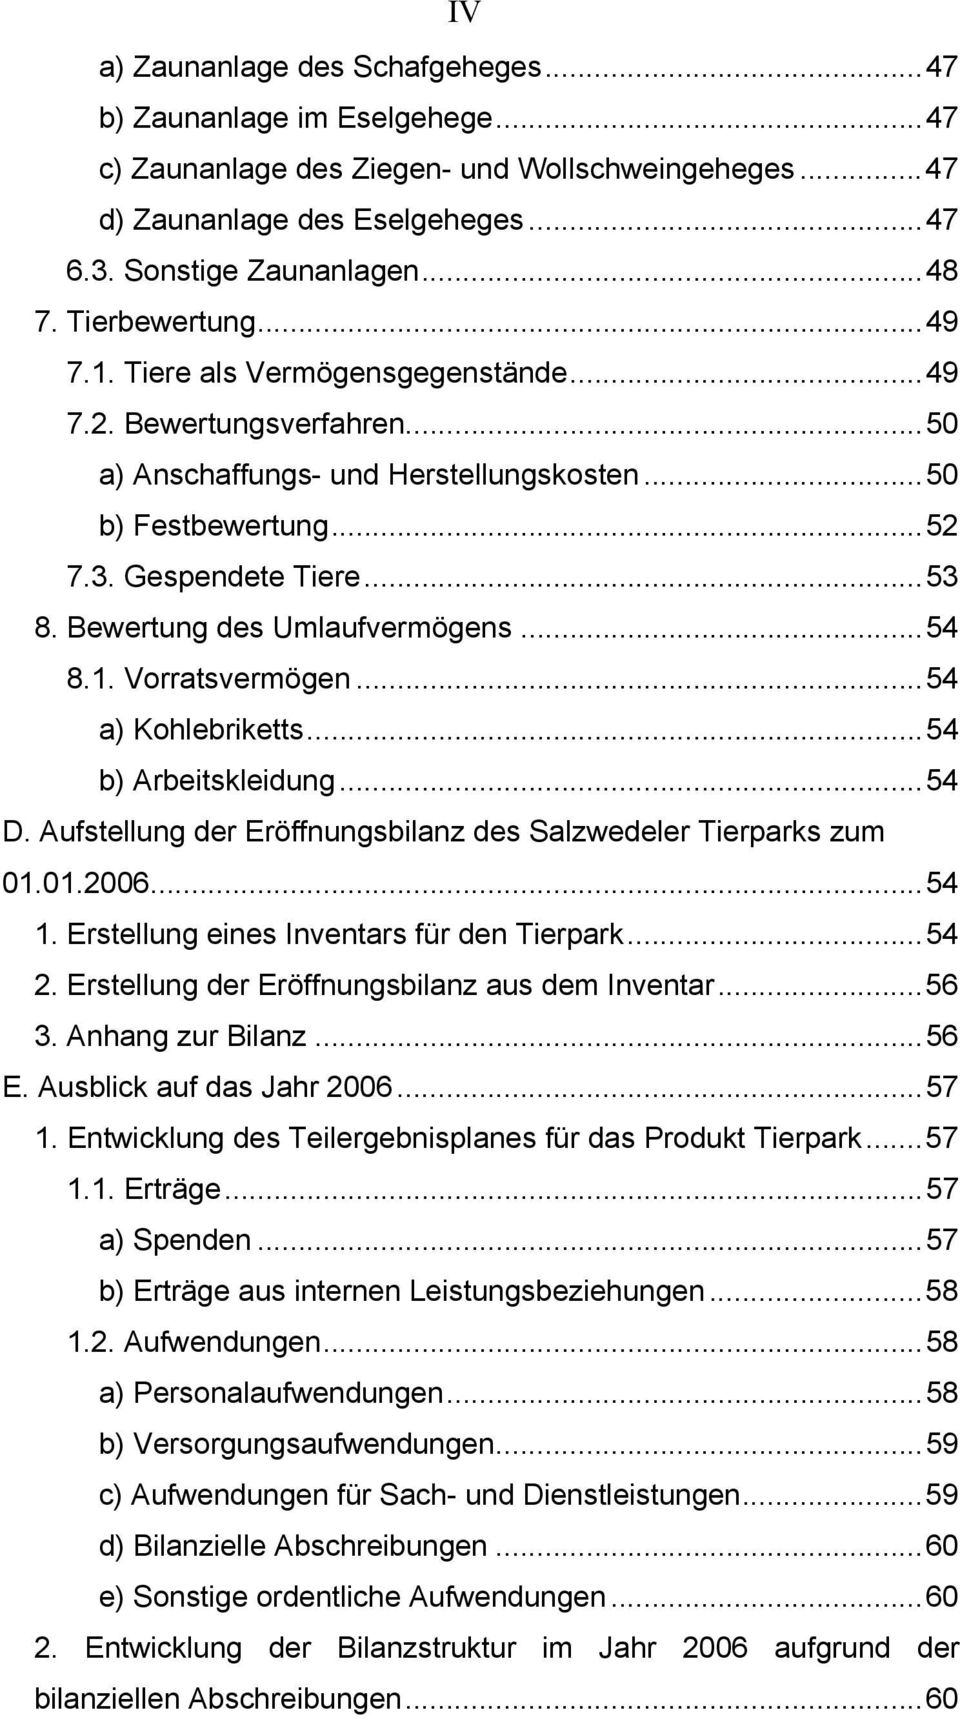 Bewertung des Umlaufvermögens...54 8.1. Vorratsvermögen...54 a) Kohlebriketts...54 b) Arbeitskleidung...54 D. Aufstellung der Eröffnungsbilanz des Salzwedeler Tierparks zum 01.01.2006...54 1.